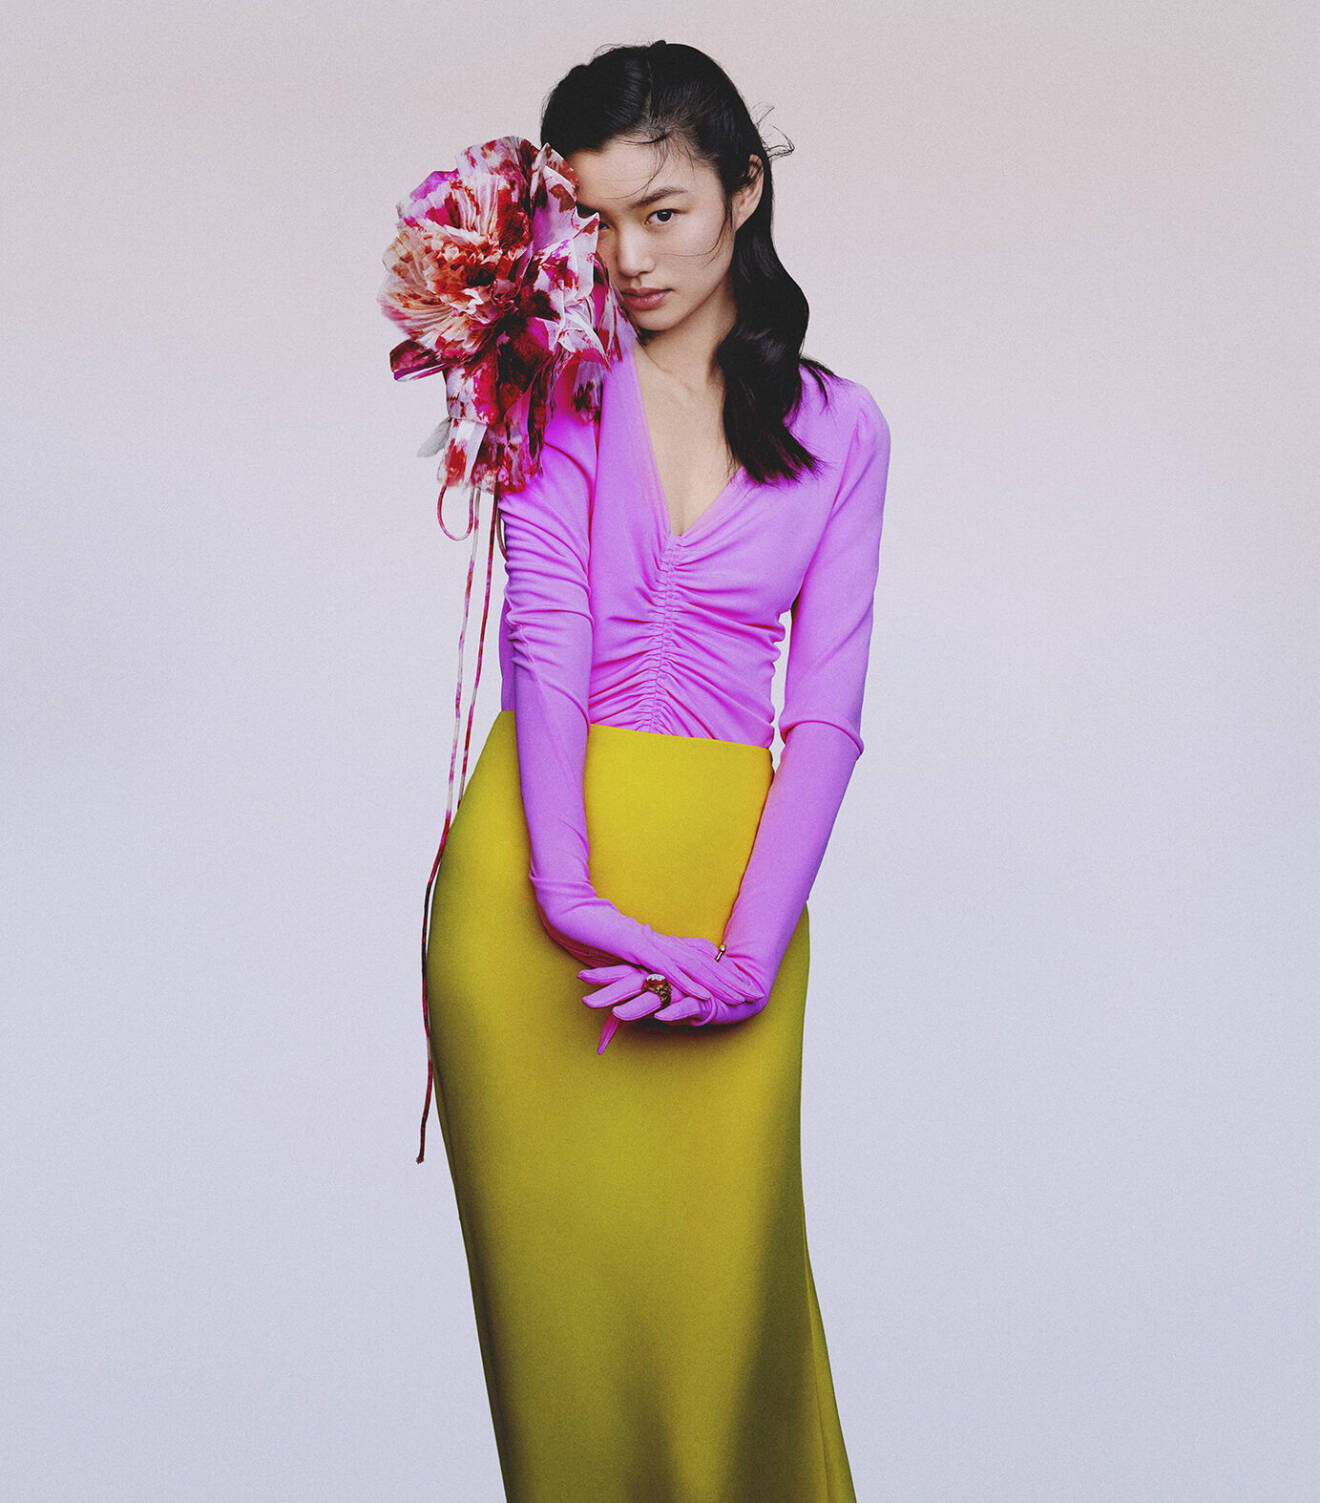 Modellen har på sig en lila topp med handskar, en gul långkjol och en stor blom-accessoar fäst på axeln